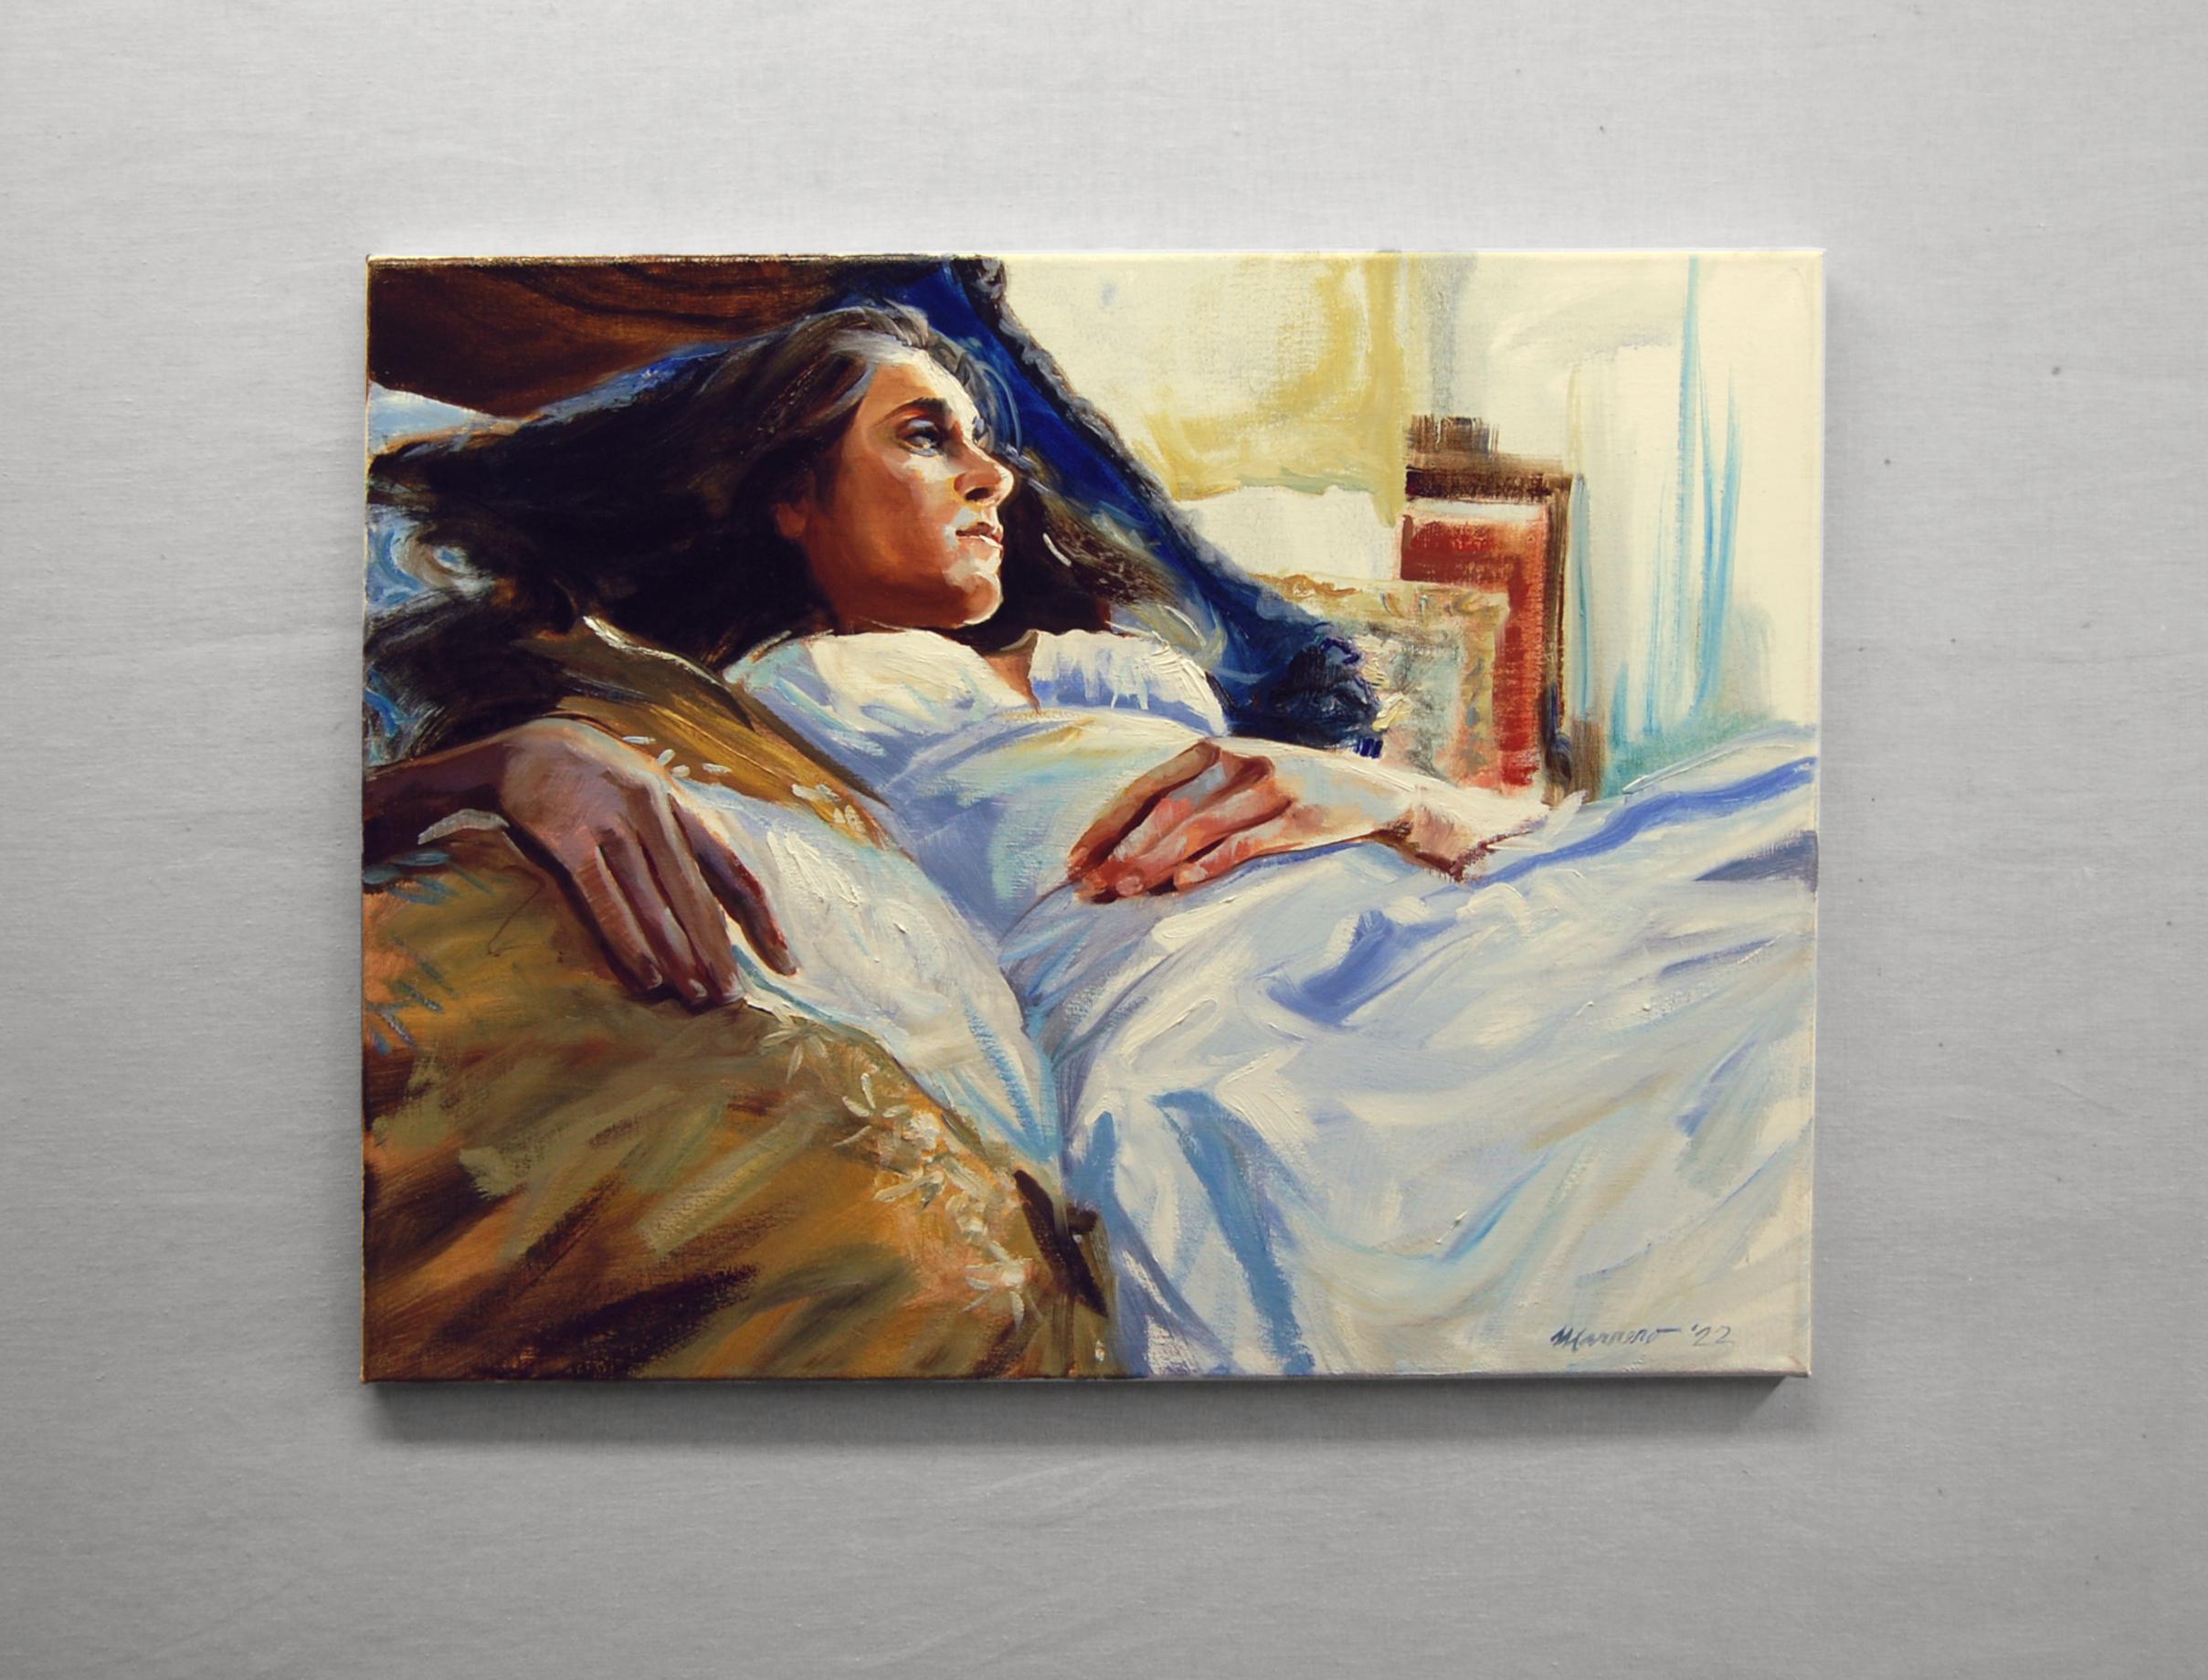 <p>Commentaires de l'artiste<br>Image poignante d'une jeune femme allongée dans son lit par l'artiste Onelio Marrero. Elle est vêtue de blanc, allongée sur un lit en peluche et regarde avec nostalgie vers une fenêtre implicite. La lumière tombe